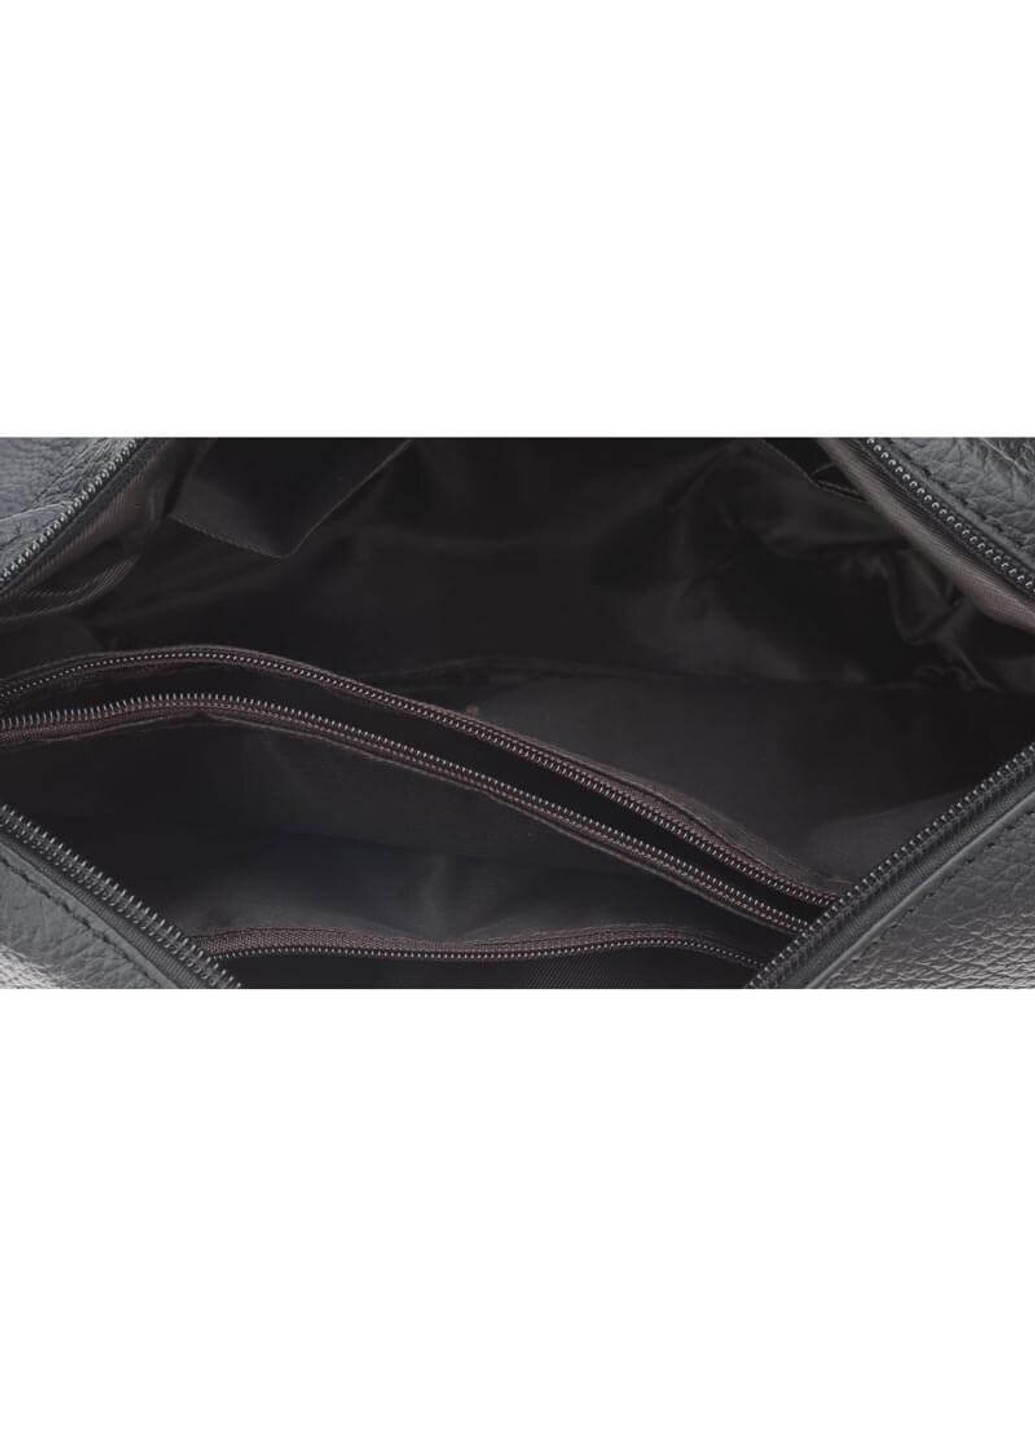 Женская кожаная сумка 1t300-black Borsa Leather (266143282)